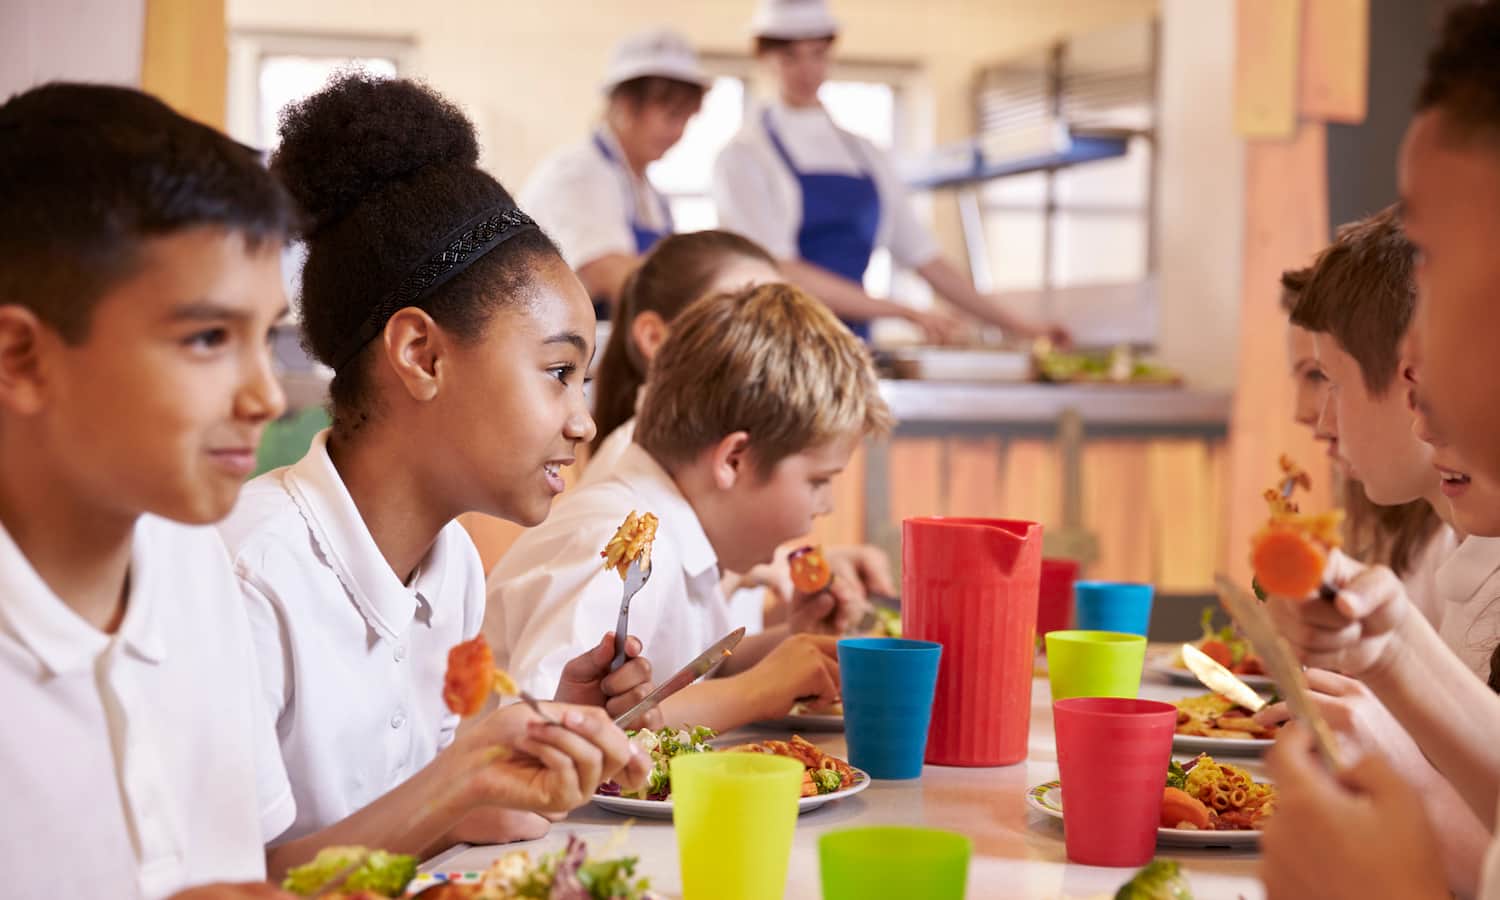 面对全国关闭COVID-19,学校当局和伙伴加强饲料取决于学校的3000万名儿童食品服务每一天。